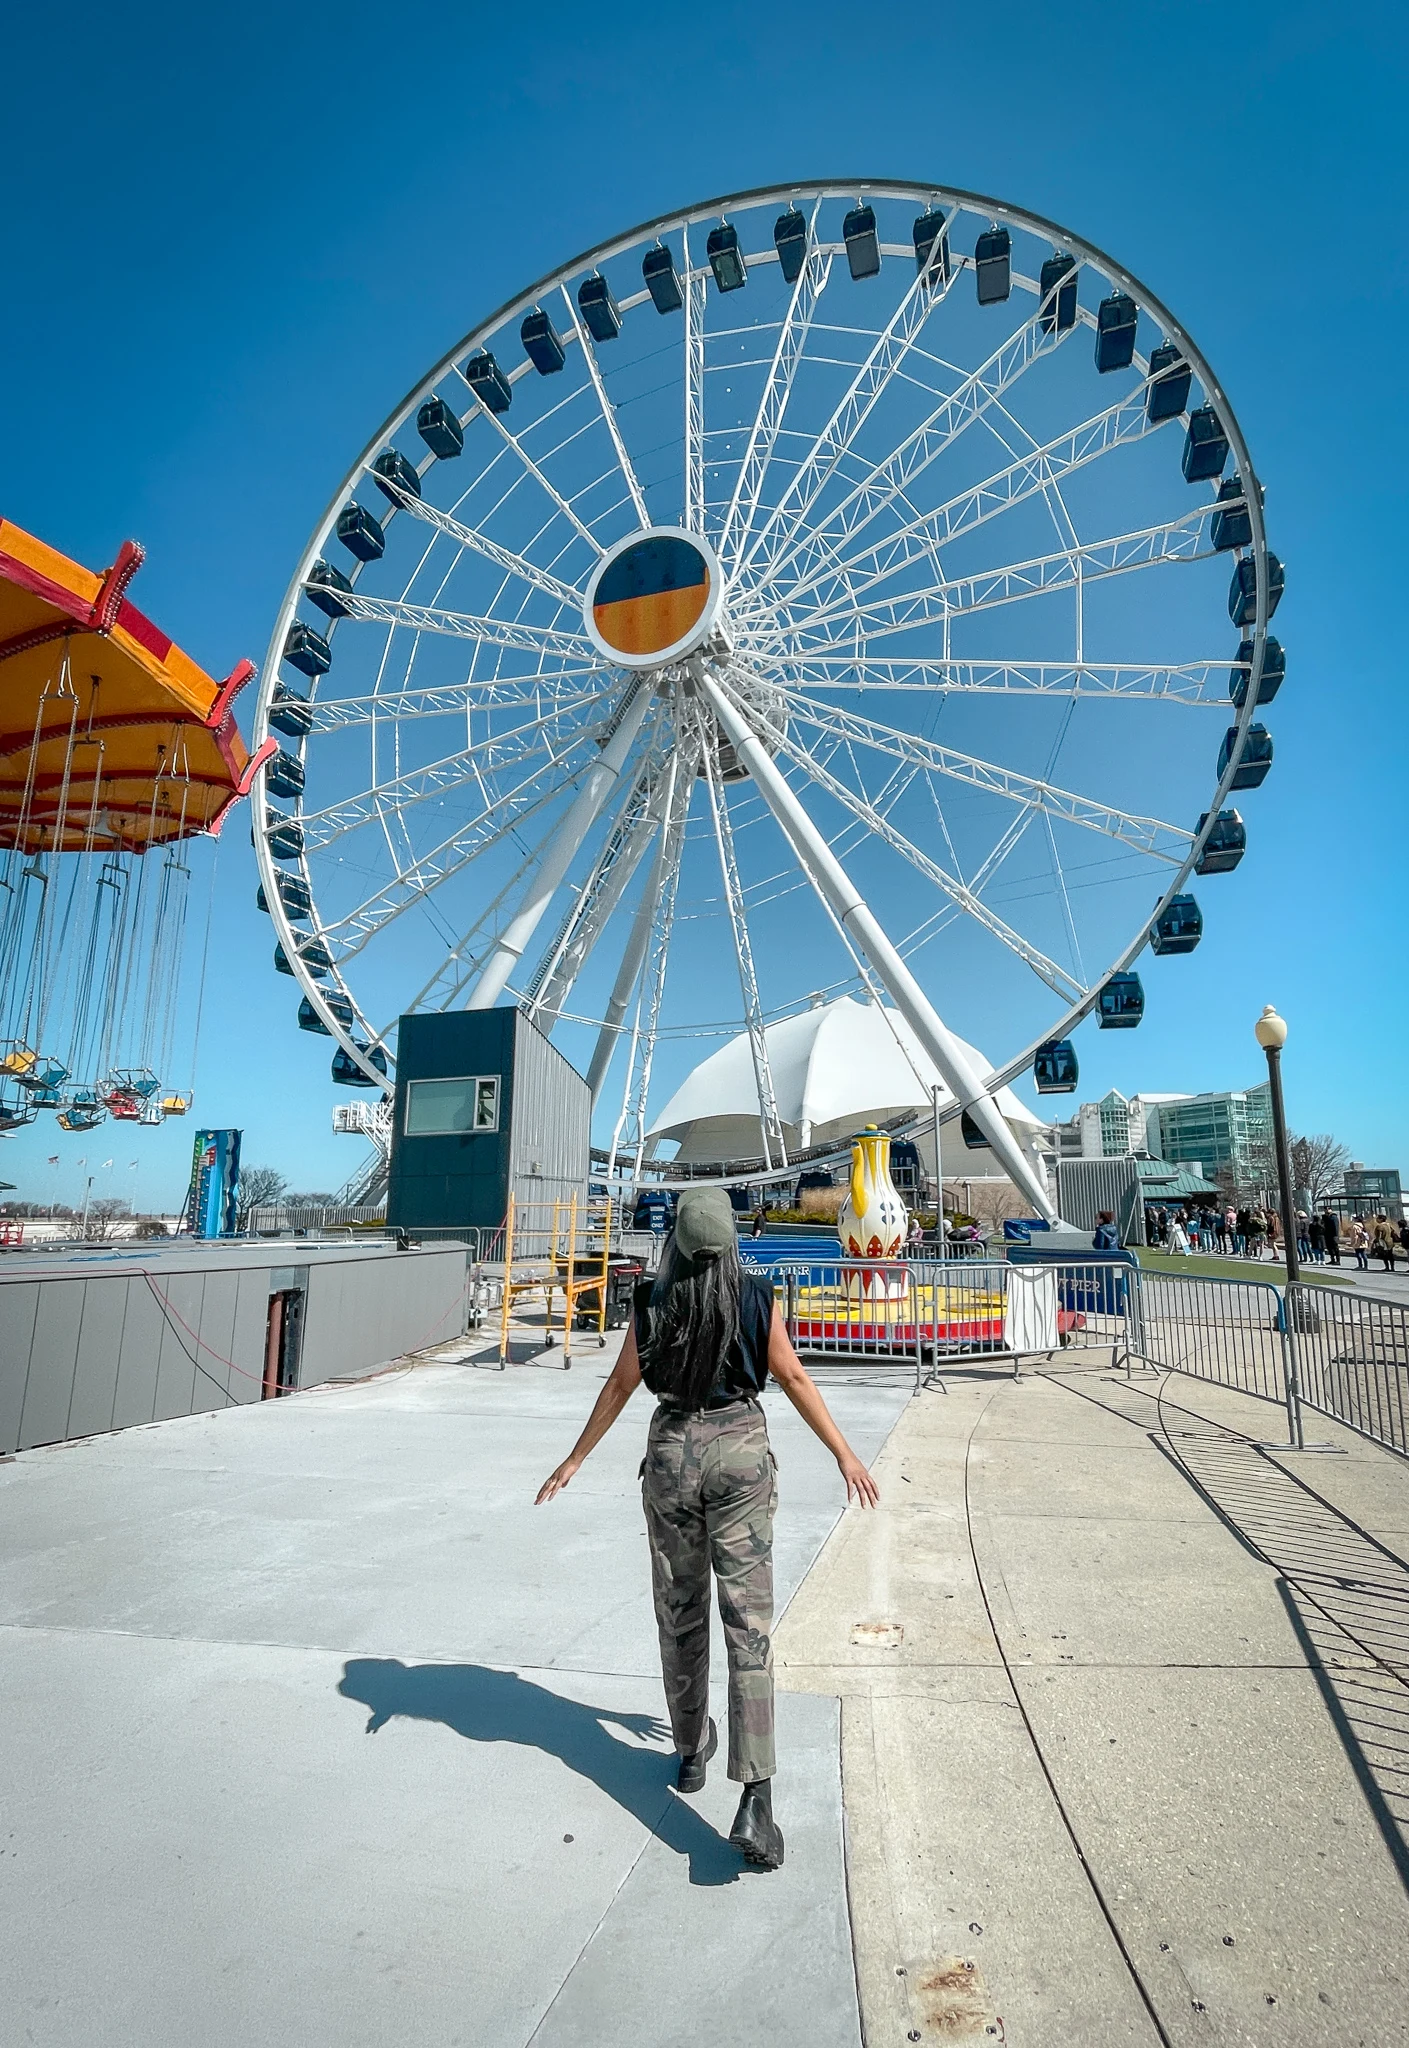 Centennial Ferris Wheel at Navy Pier in Chicago Illinois